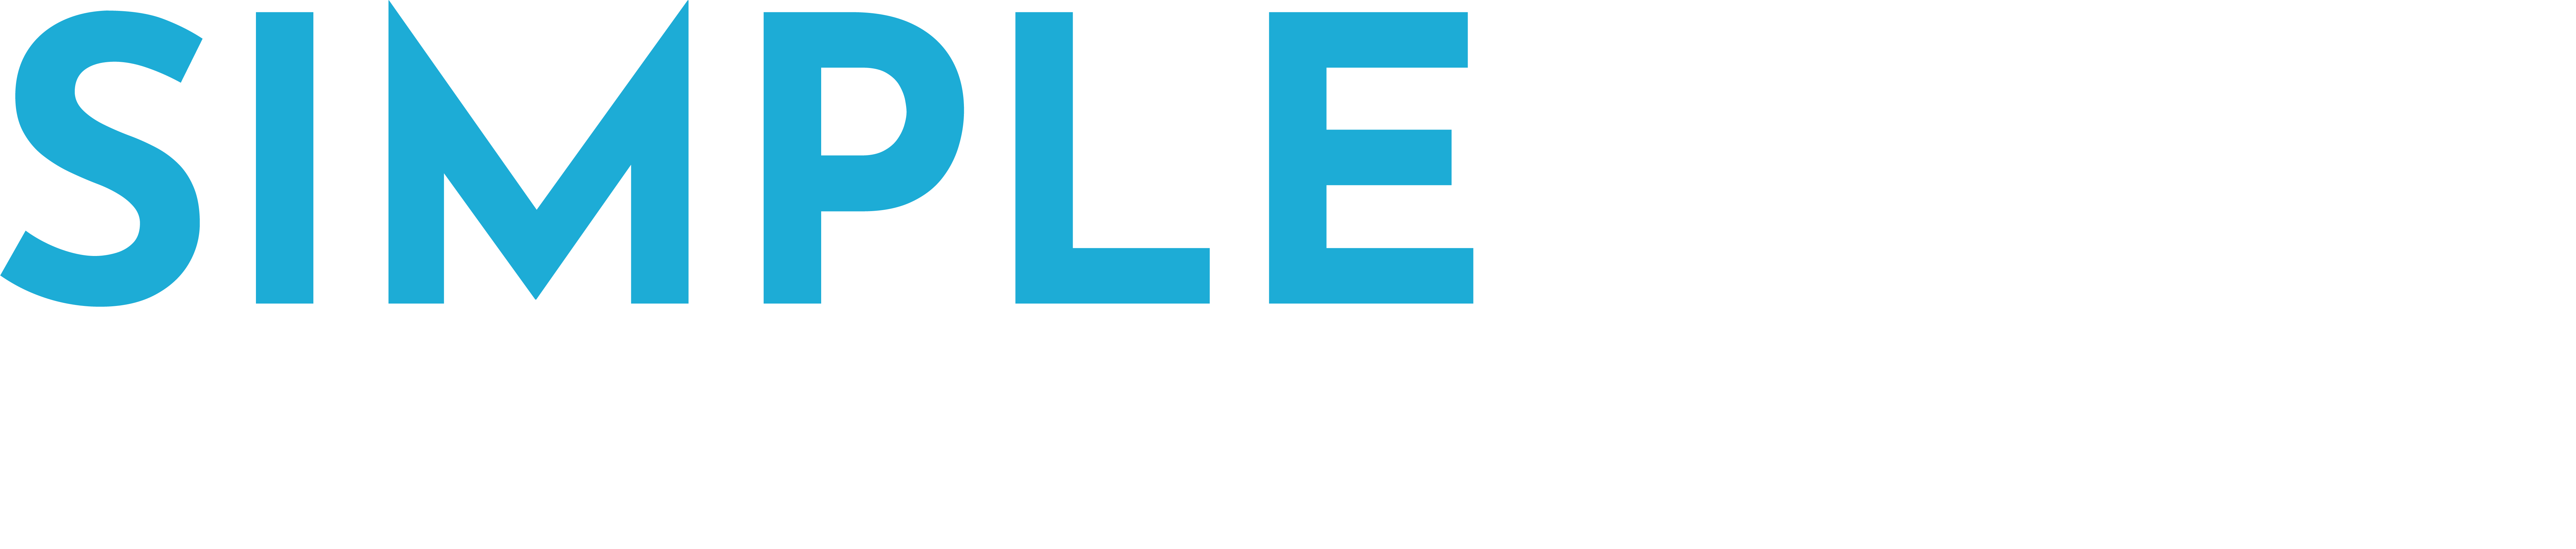 Simpleplan's Logo